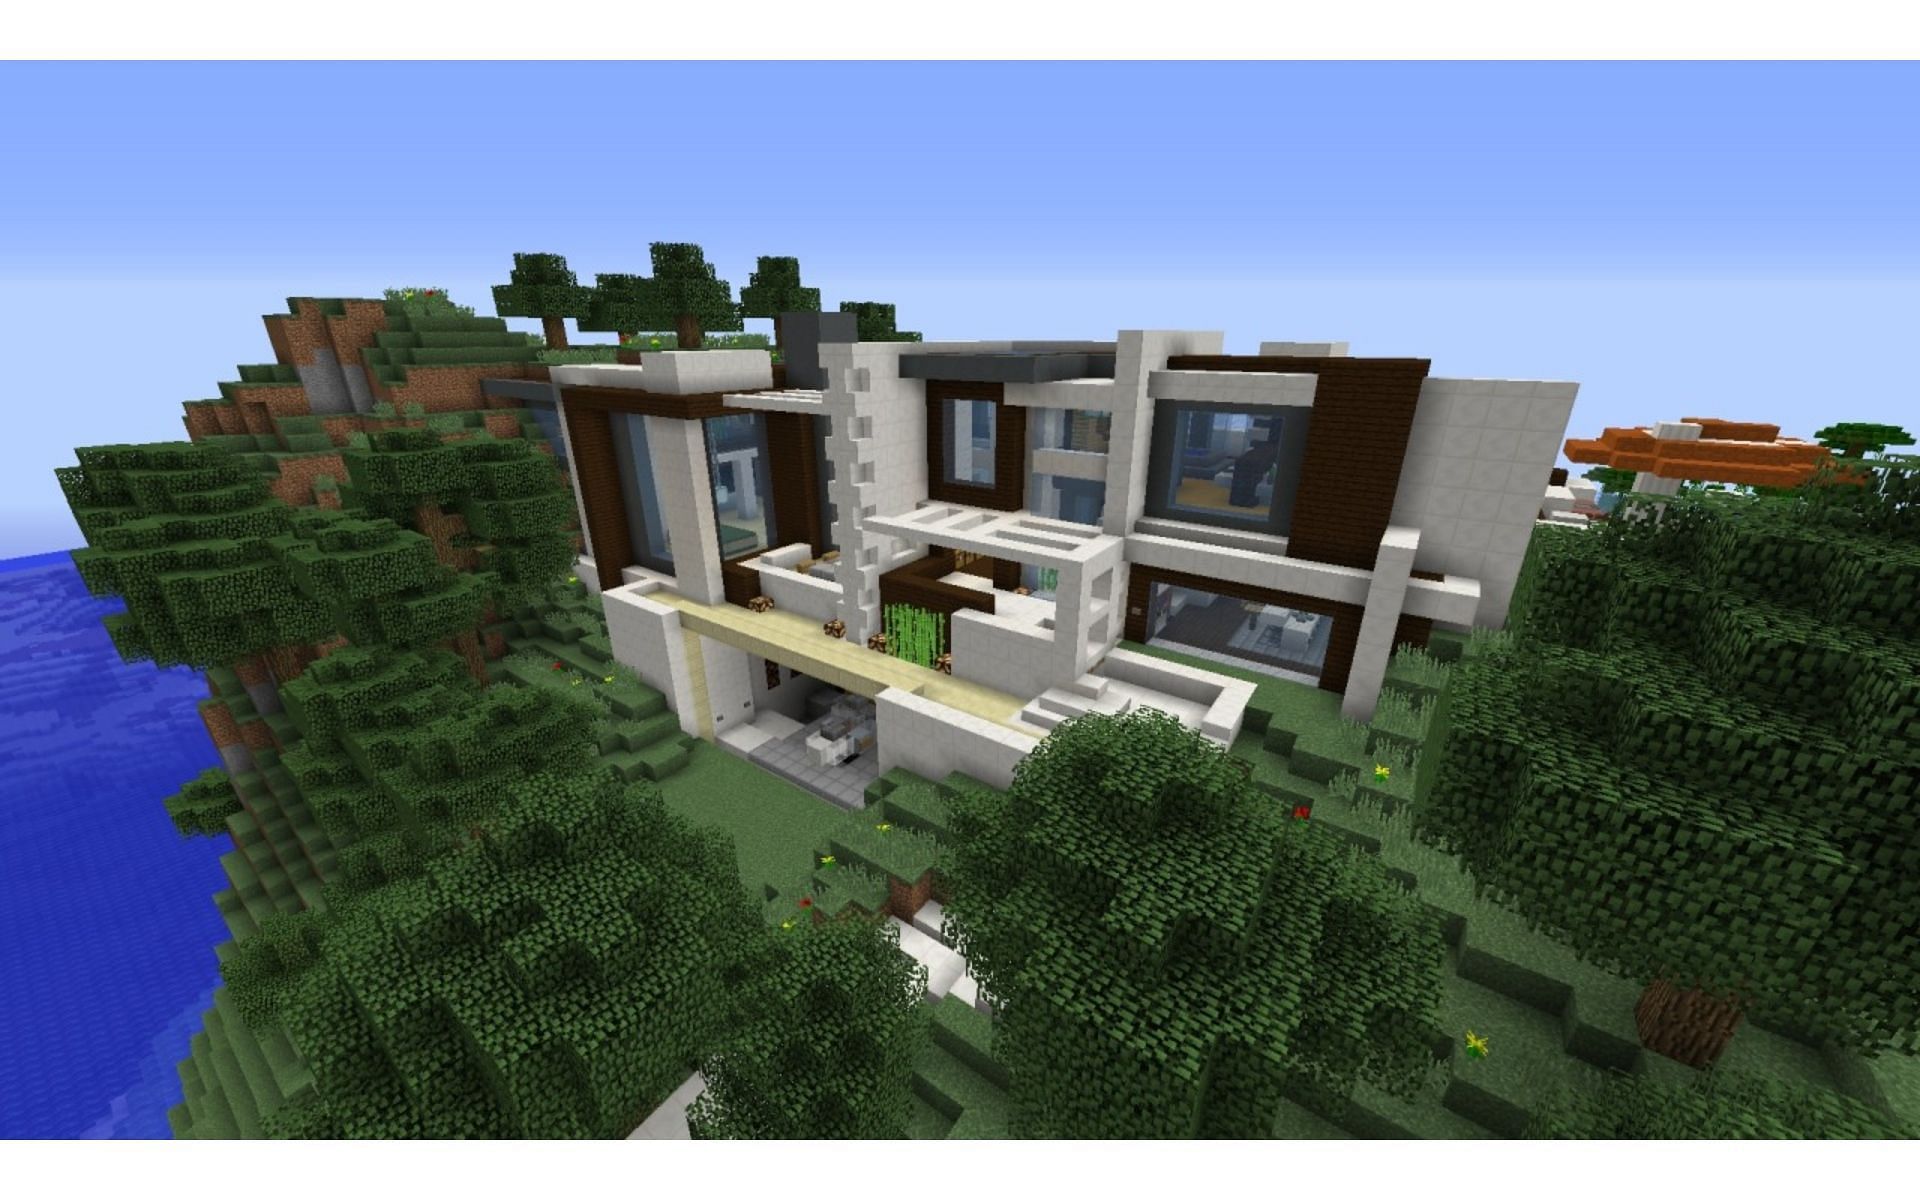 Футуристическая постройка поршневого дома (Изображение взято с сайта Planet Minecraft)